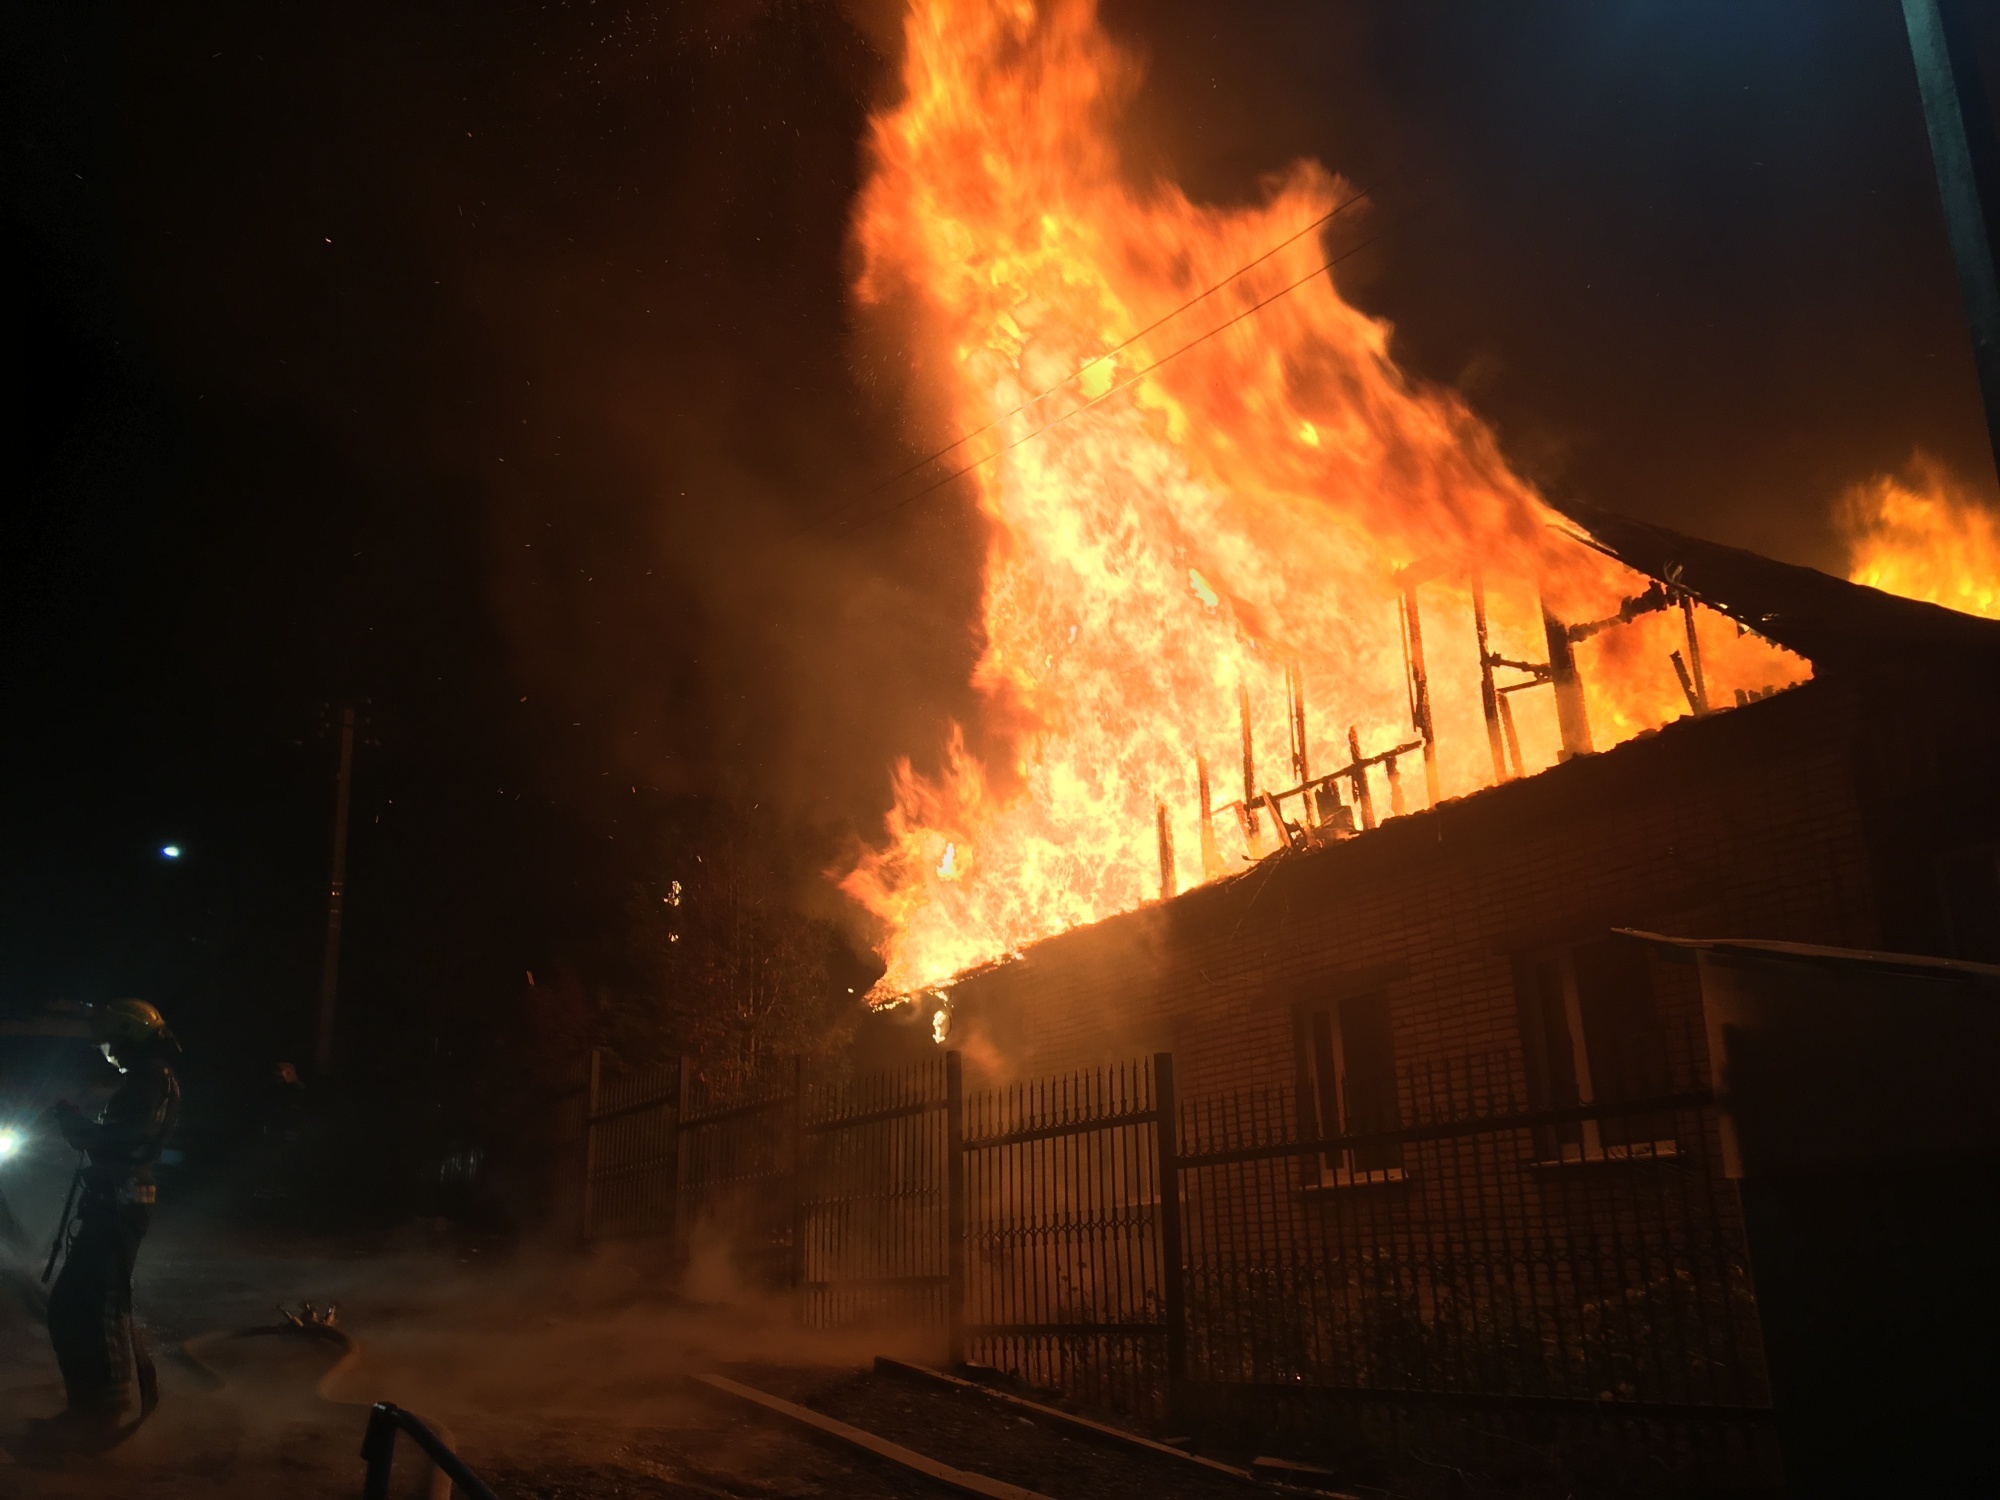 Горят два дома. Пожары в Куртамыше. Сгоревший дом. Пожар в Камешковском районе. Горящее здание ночью.